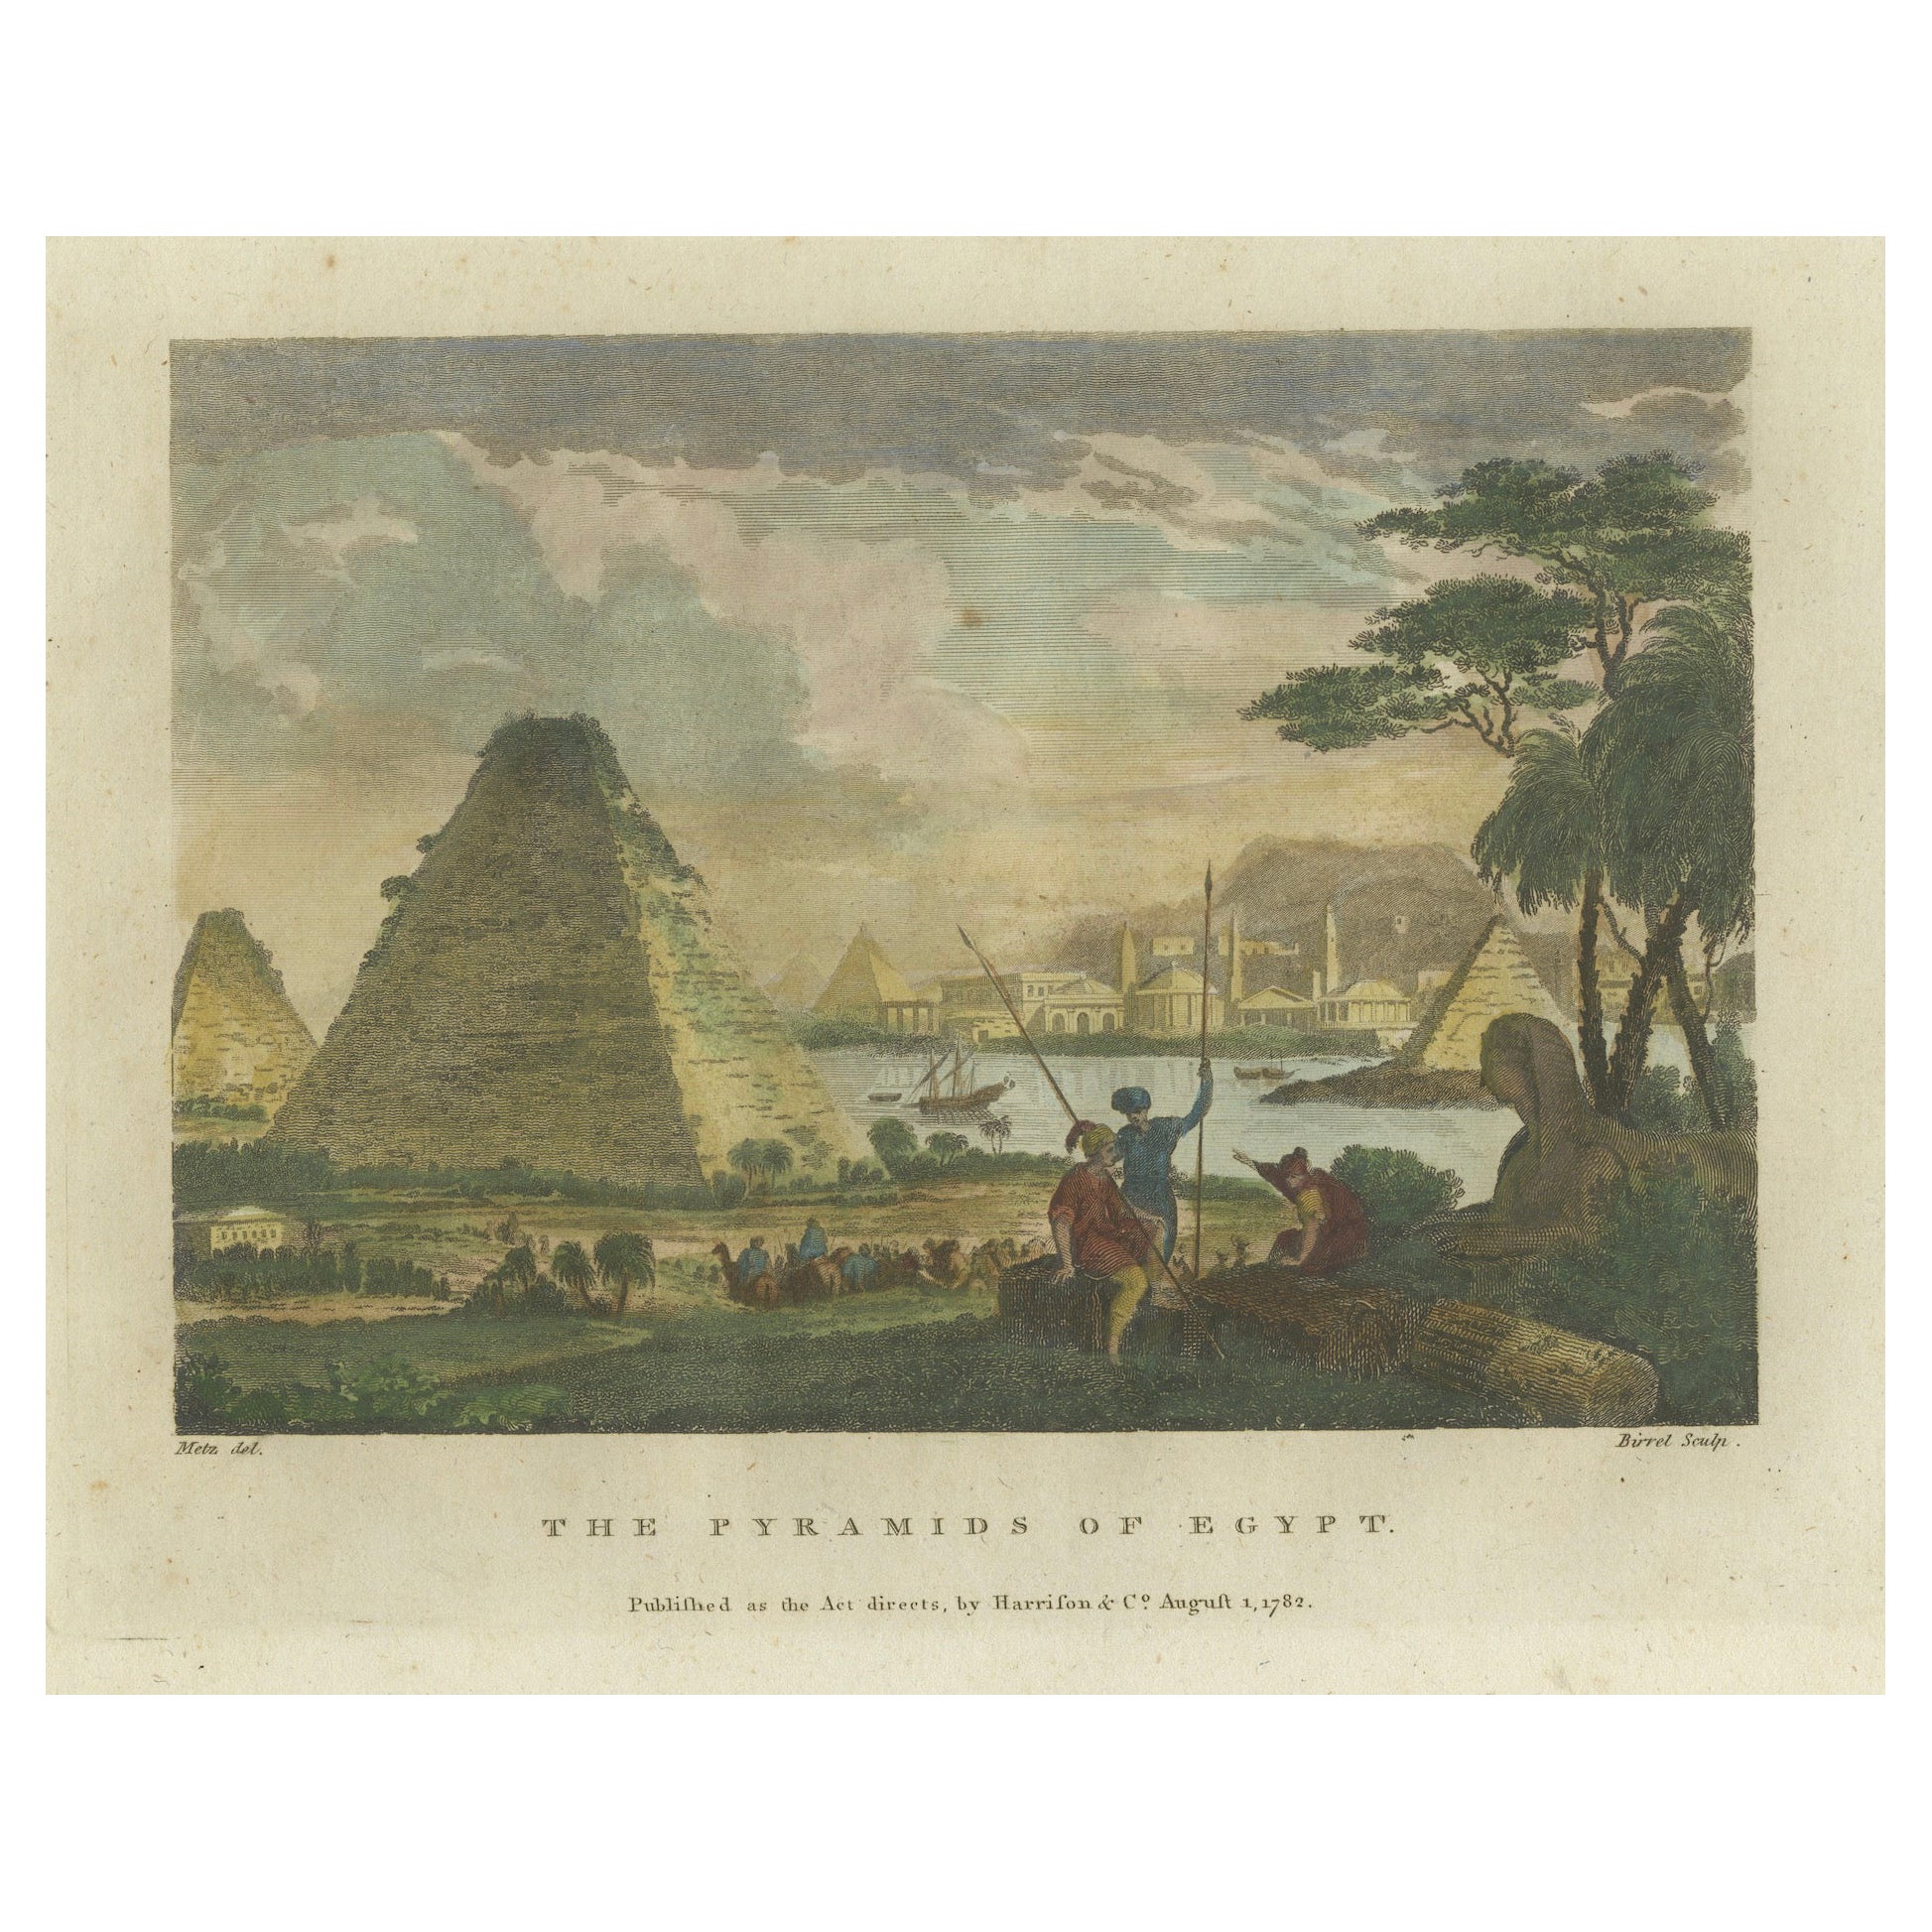 Giza-Pyramiden und Sphinx und Gravur: Eine ägyptische Vista aus dem 18. Jahrhundert, 1782